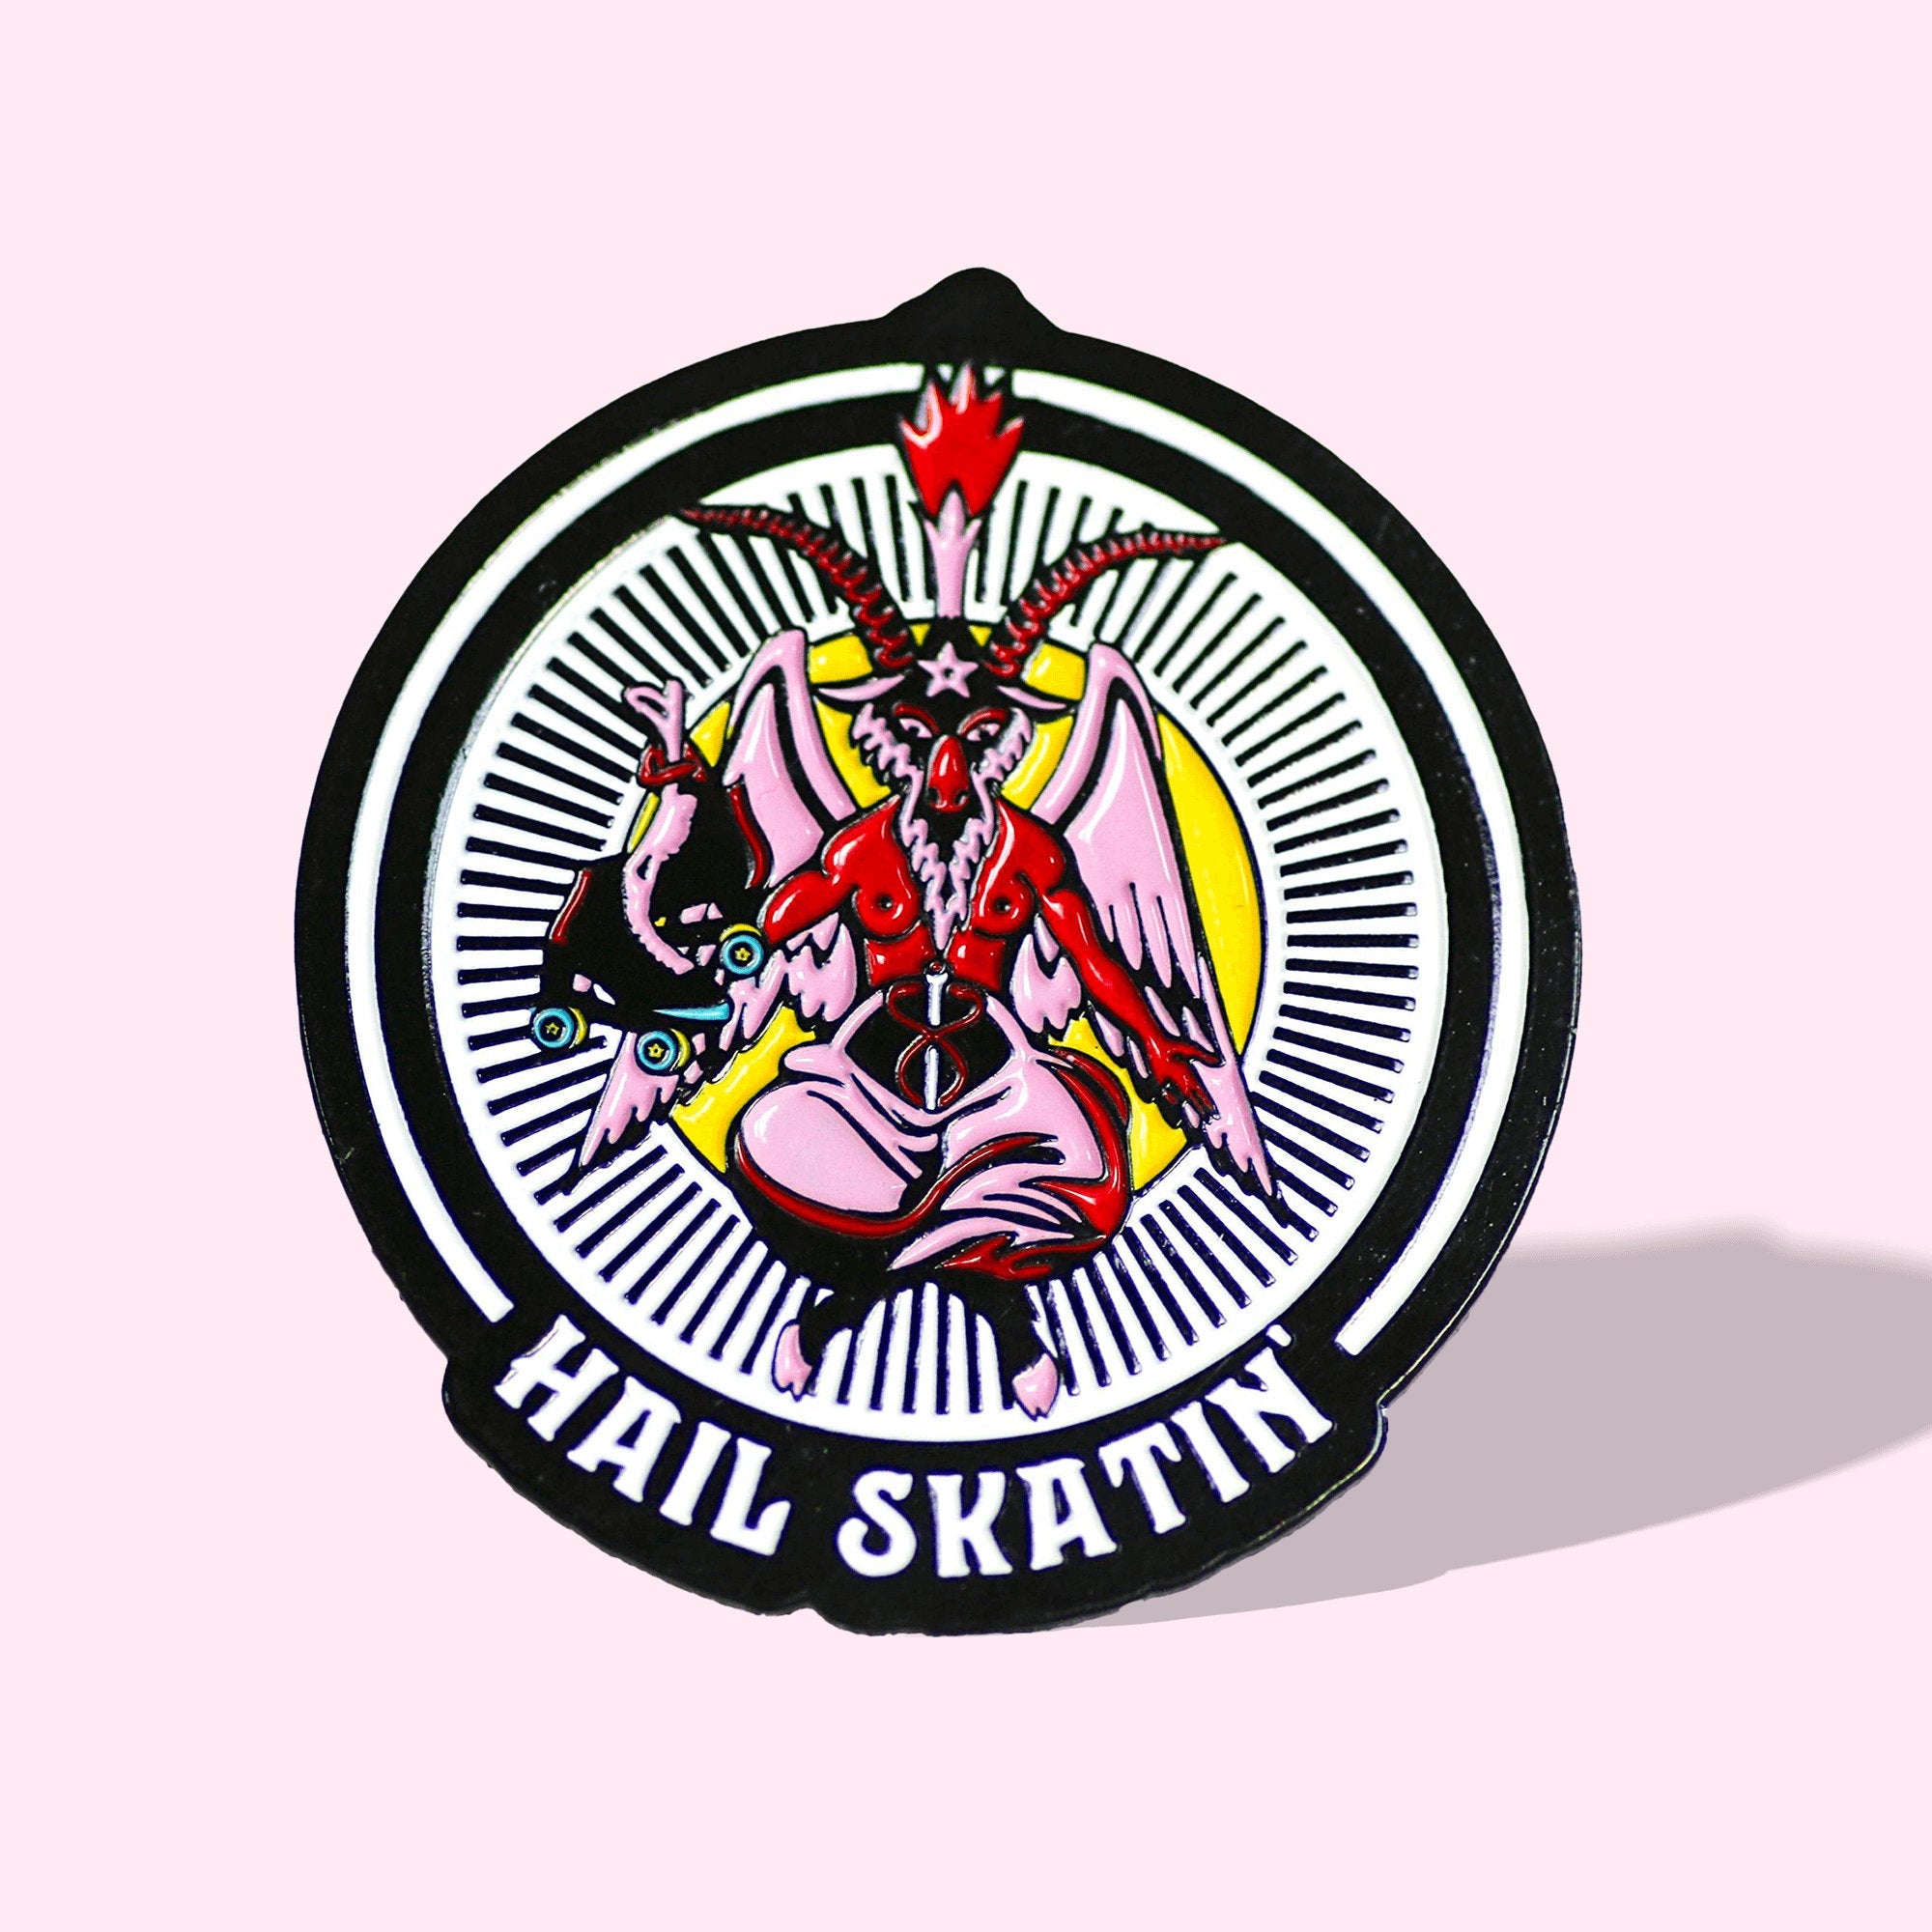 Baphomet Hail Skatin' Roller Skate Pin